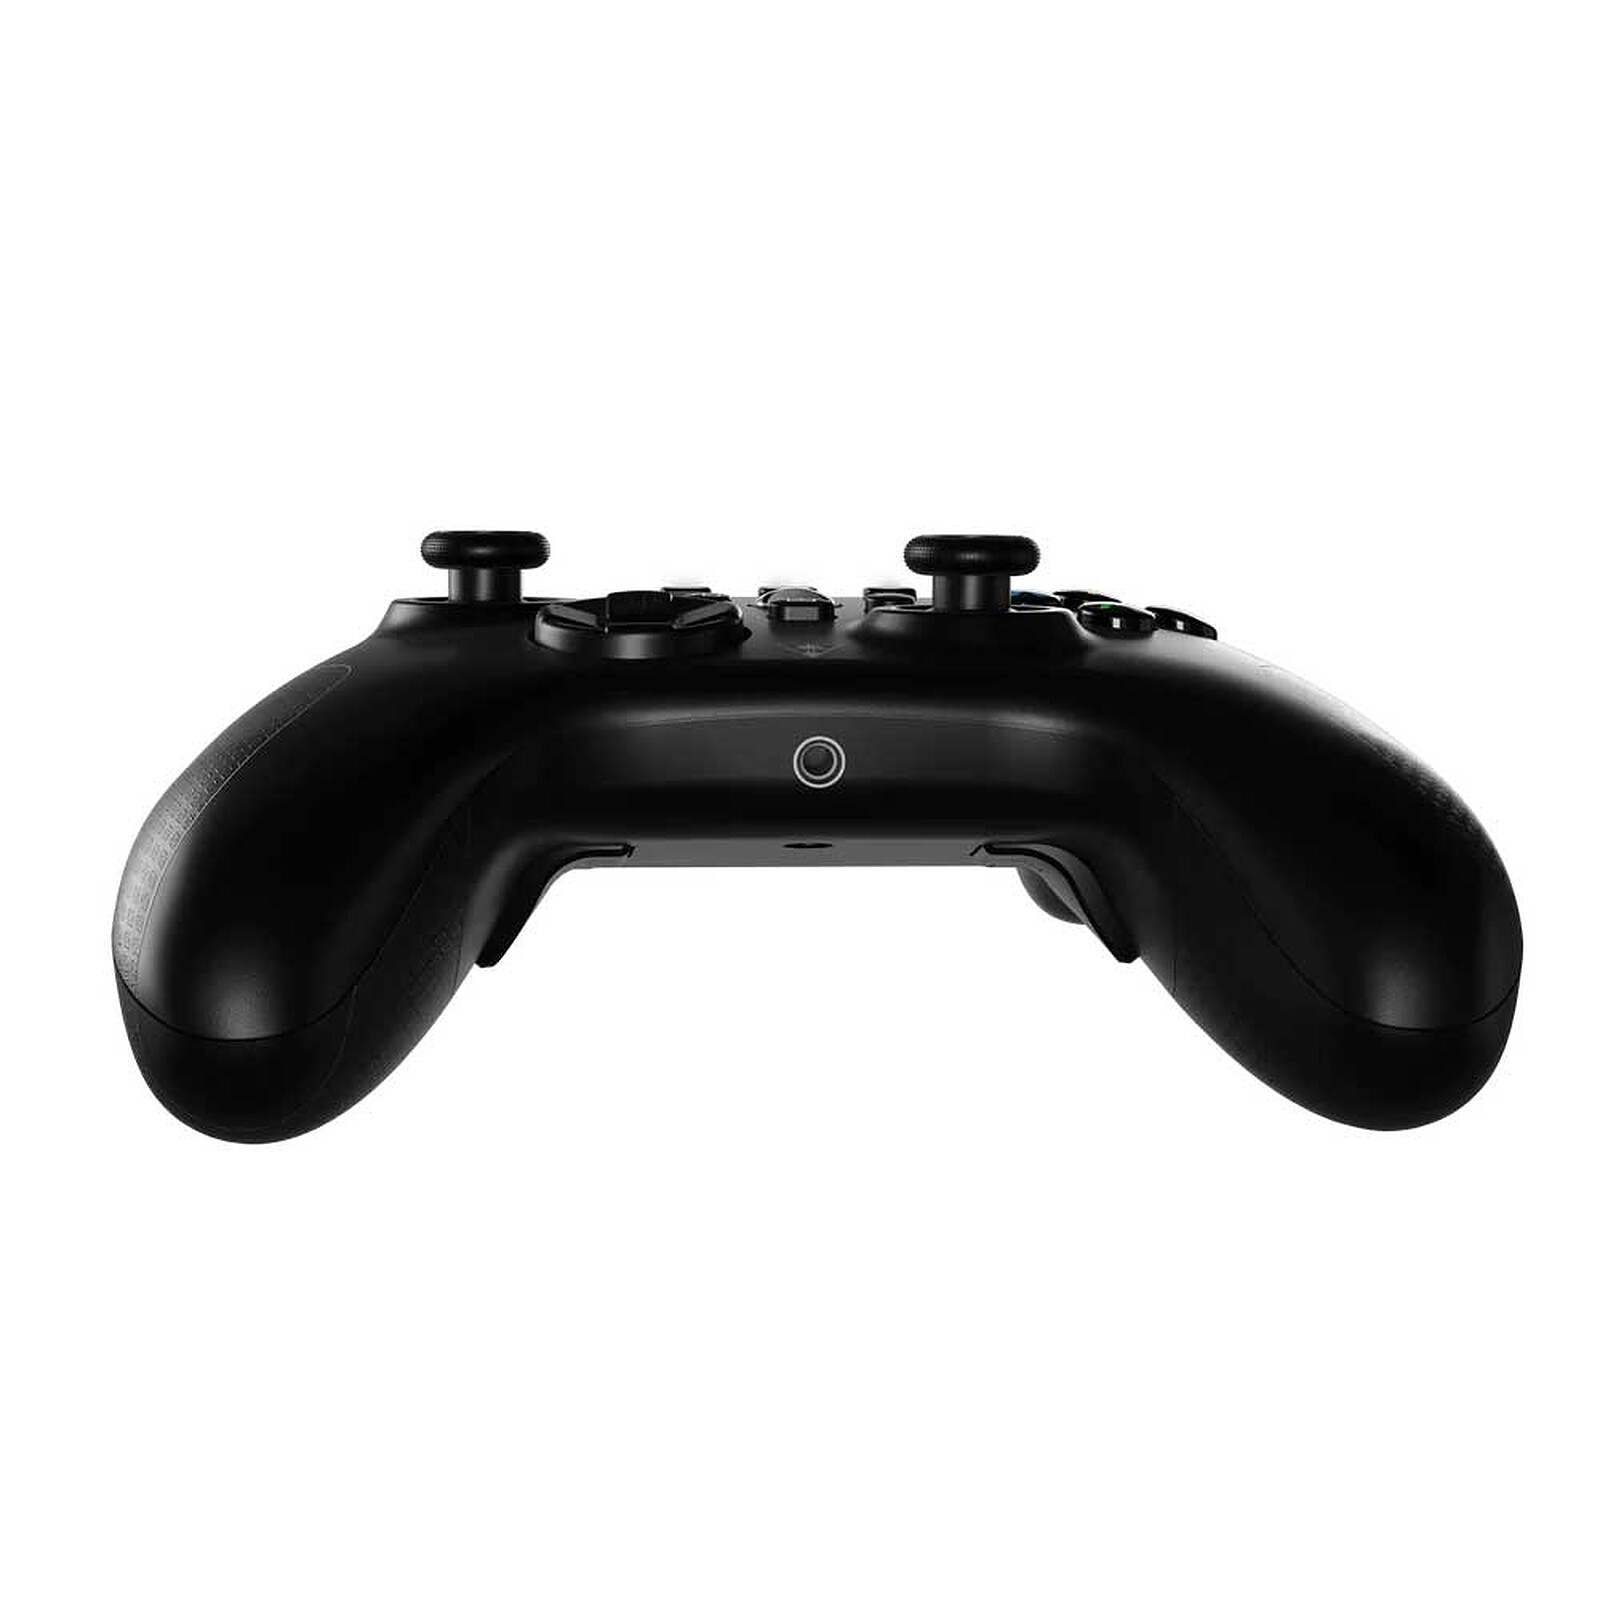 Mando inalámbrico Microsoft Xbox One v2 (Negro) - Mando PC - LDLC